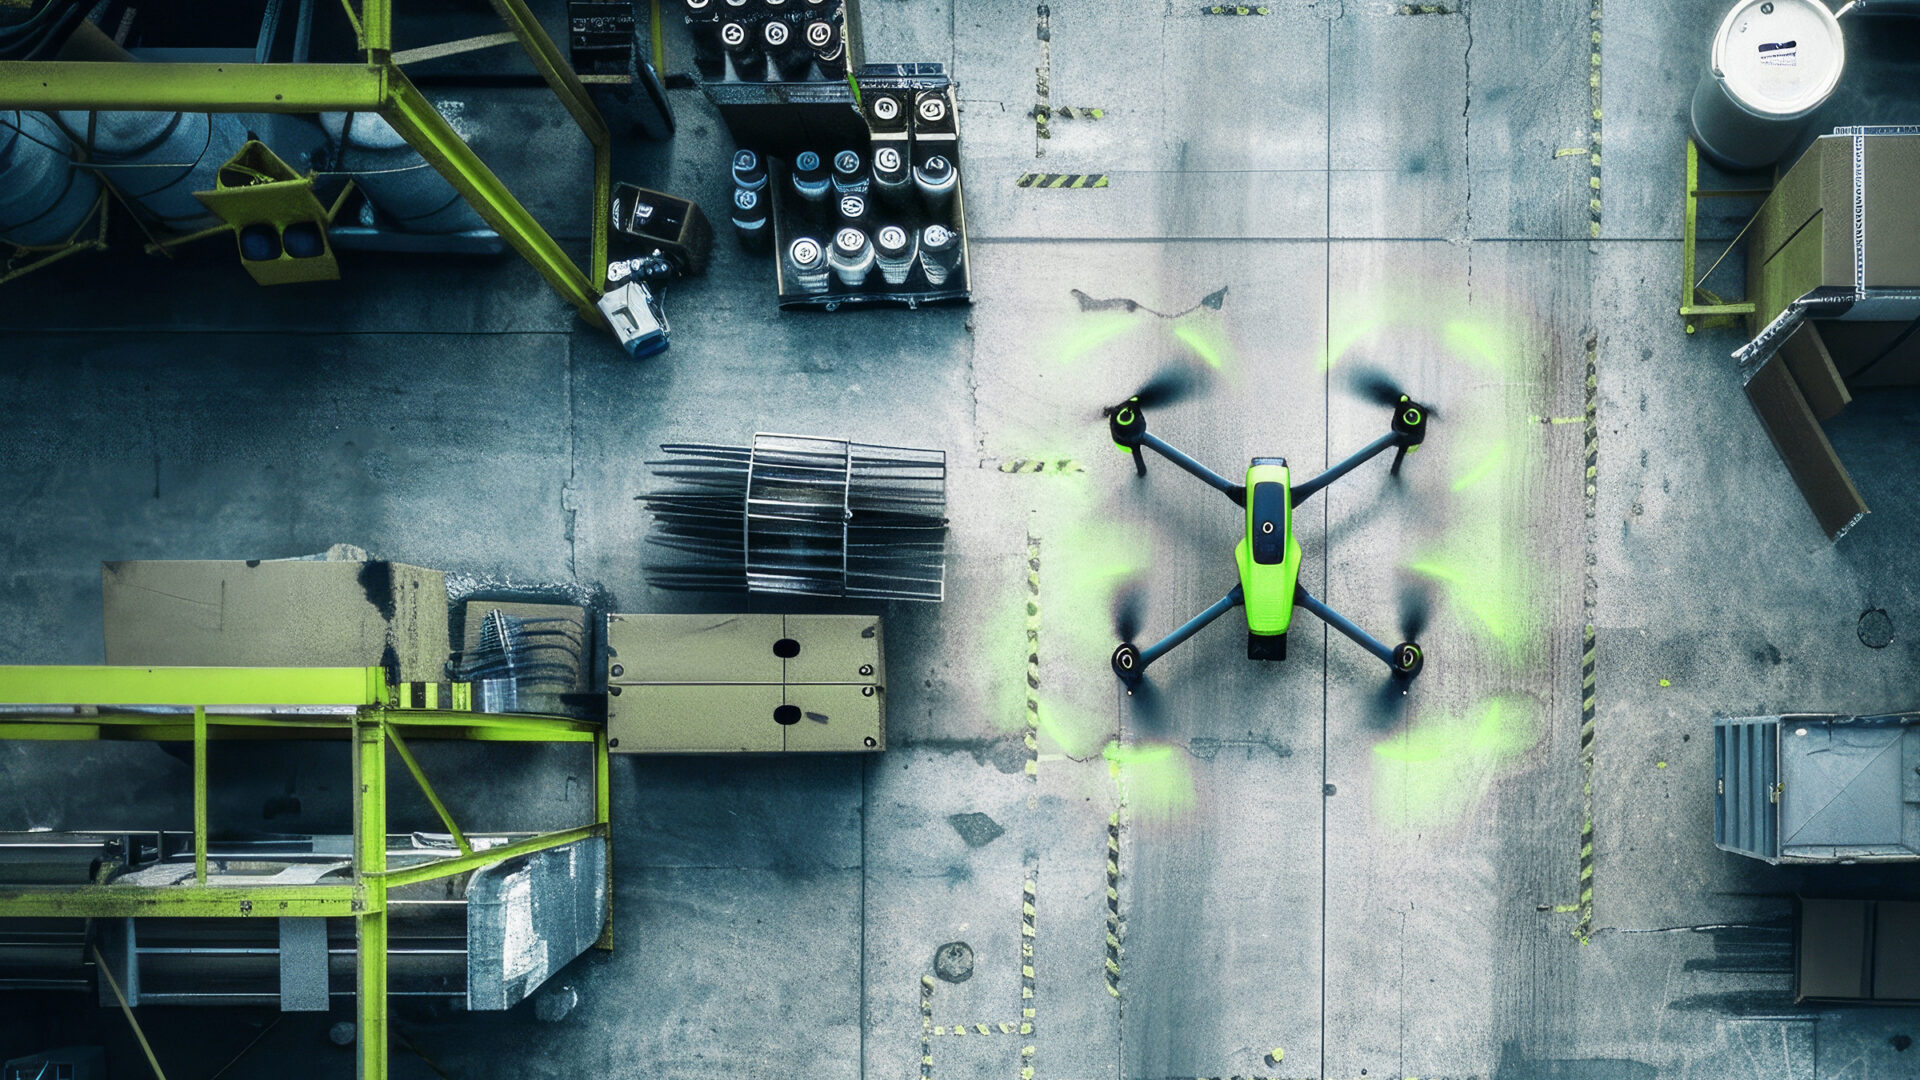 Headerbild zum Blogartikel "Drei Szenarien der Logistik der Zukunft": Zeigt Drohne von oben in großem Lager bzw. Logistikzentrum